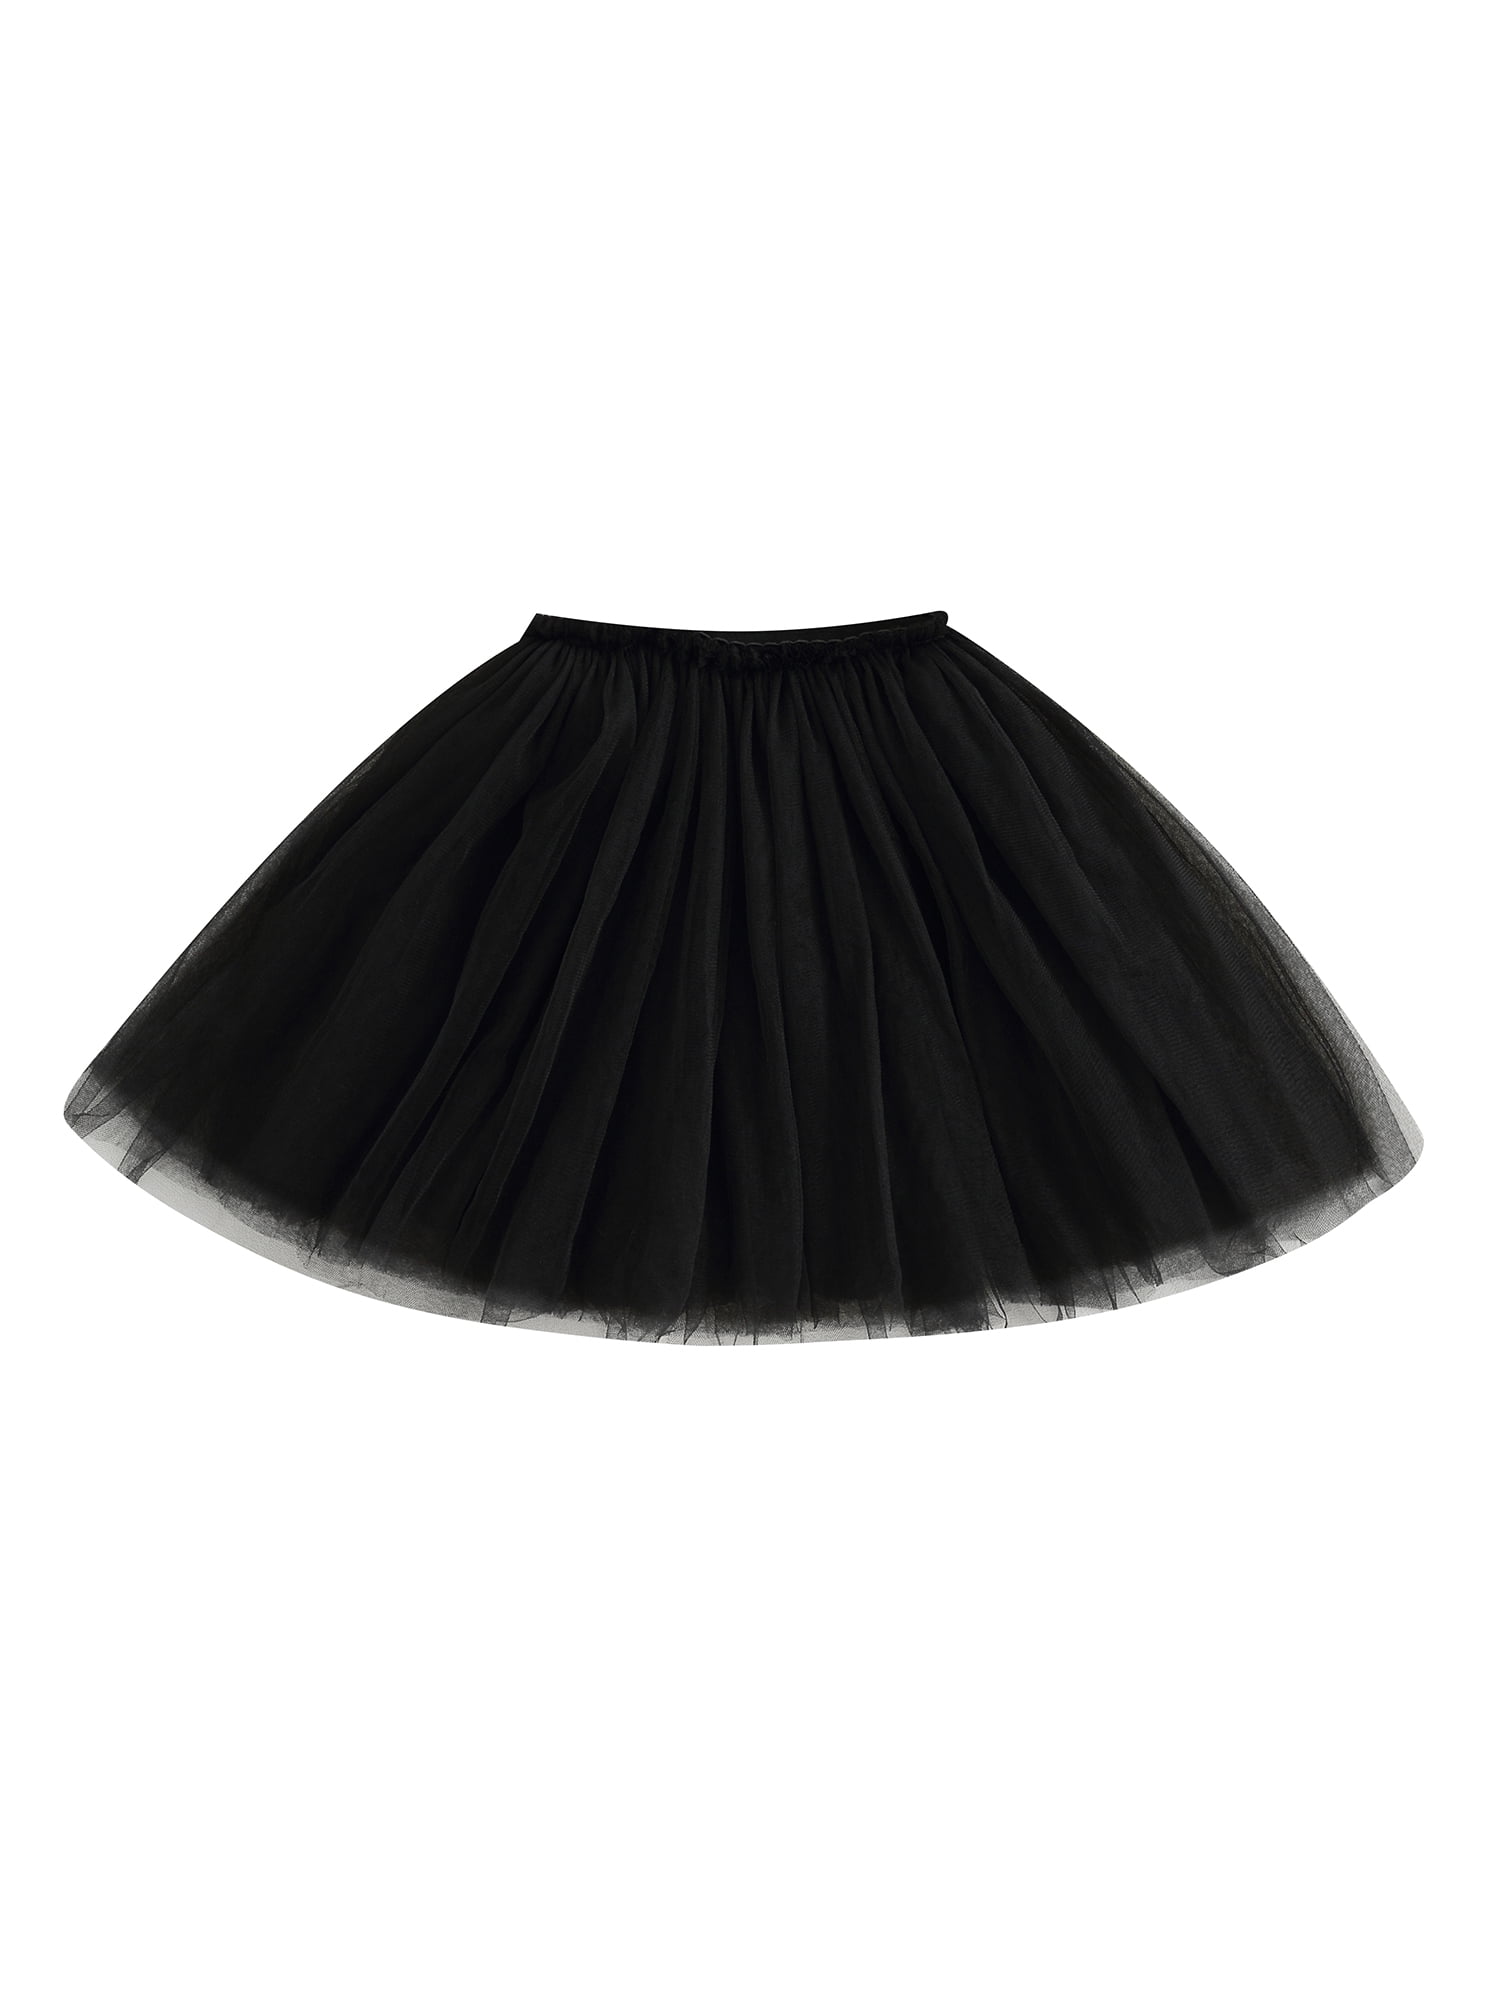 Baby Girl Tulle Mini Skirt Toddler Solid Color Tutu Dancing Skirt ...